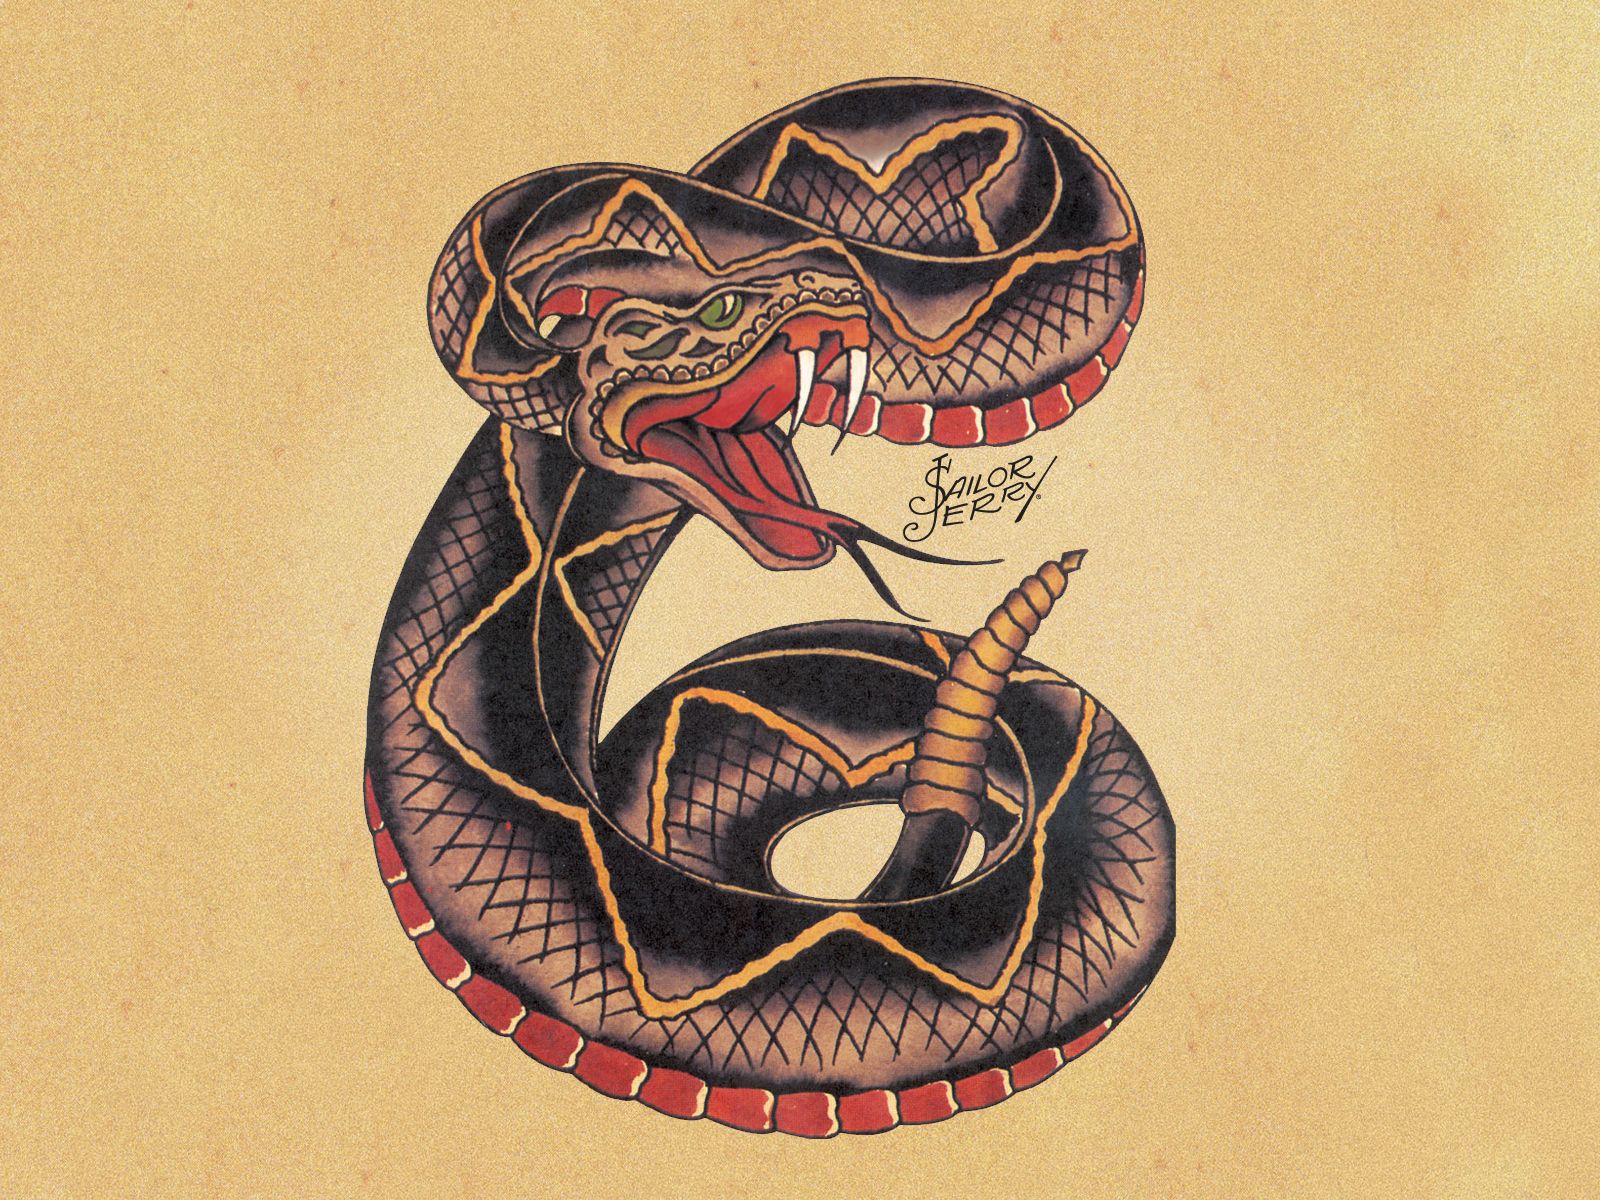 sailor jerry tatuaje de serpiente estilo americana